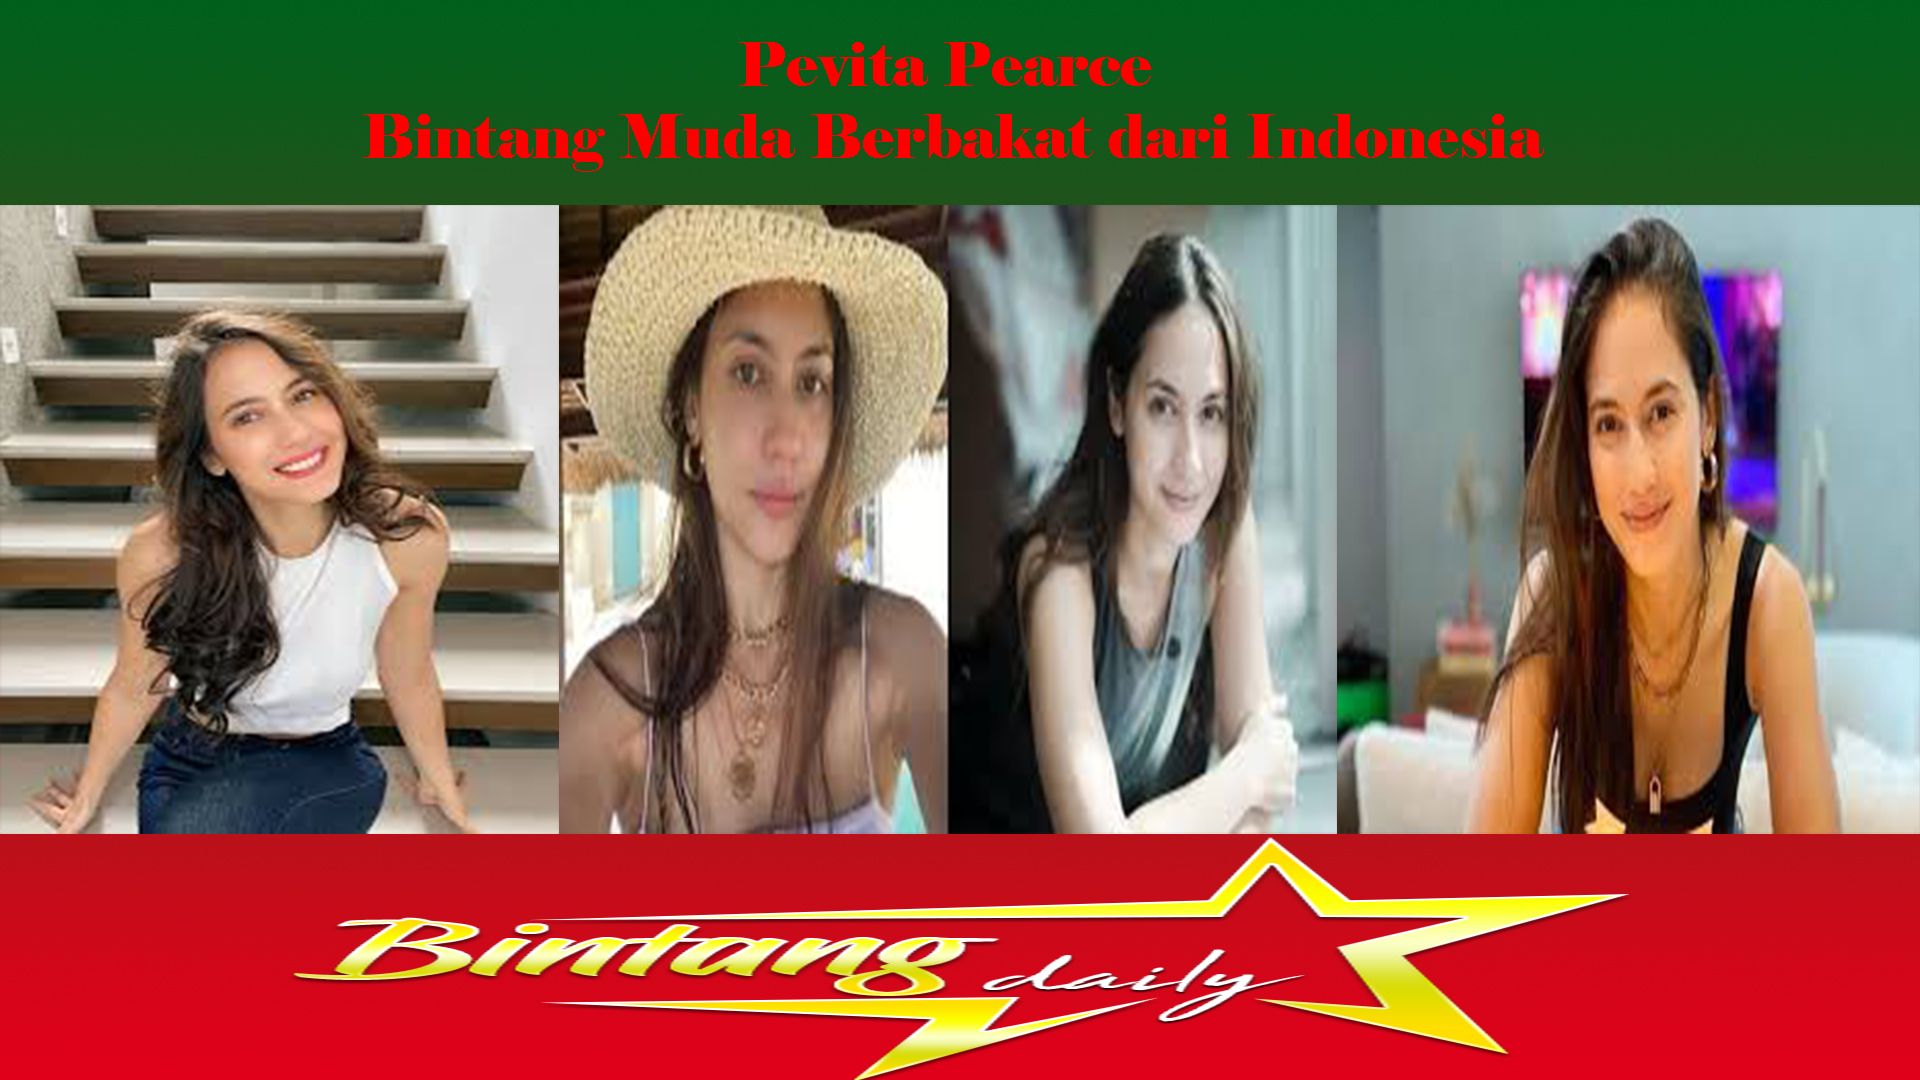 Pevita Pearce Bintang Muda Berbakat dari Indonesia